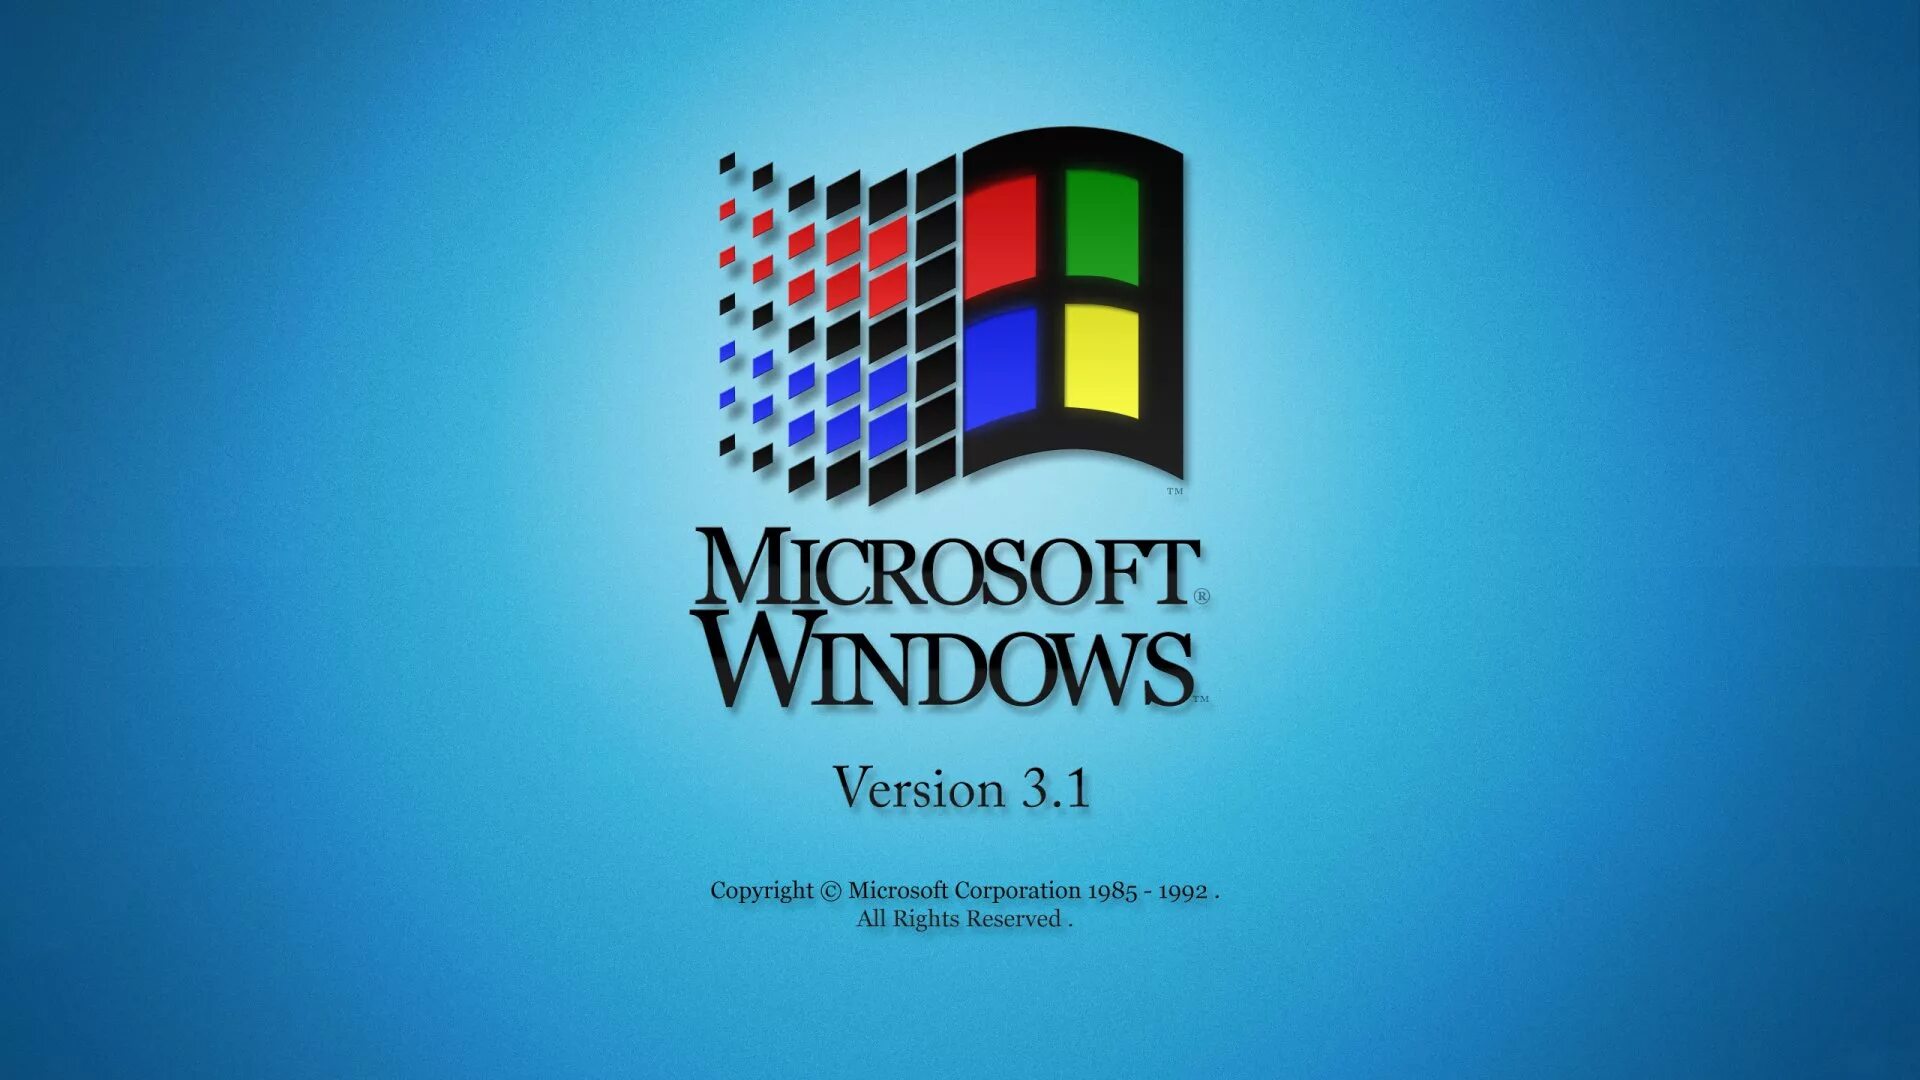 3 11 2000. Виндовс NT 3.1. Microsoft Windows NT 3.11. Windows 3.1 рабочий стол. Логотип Windows 3.1.